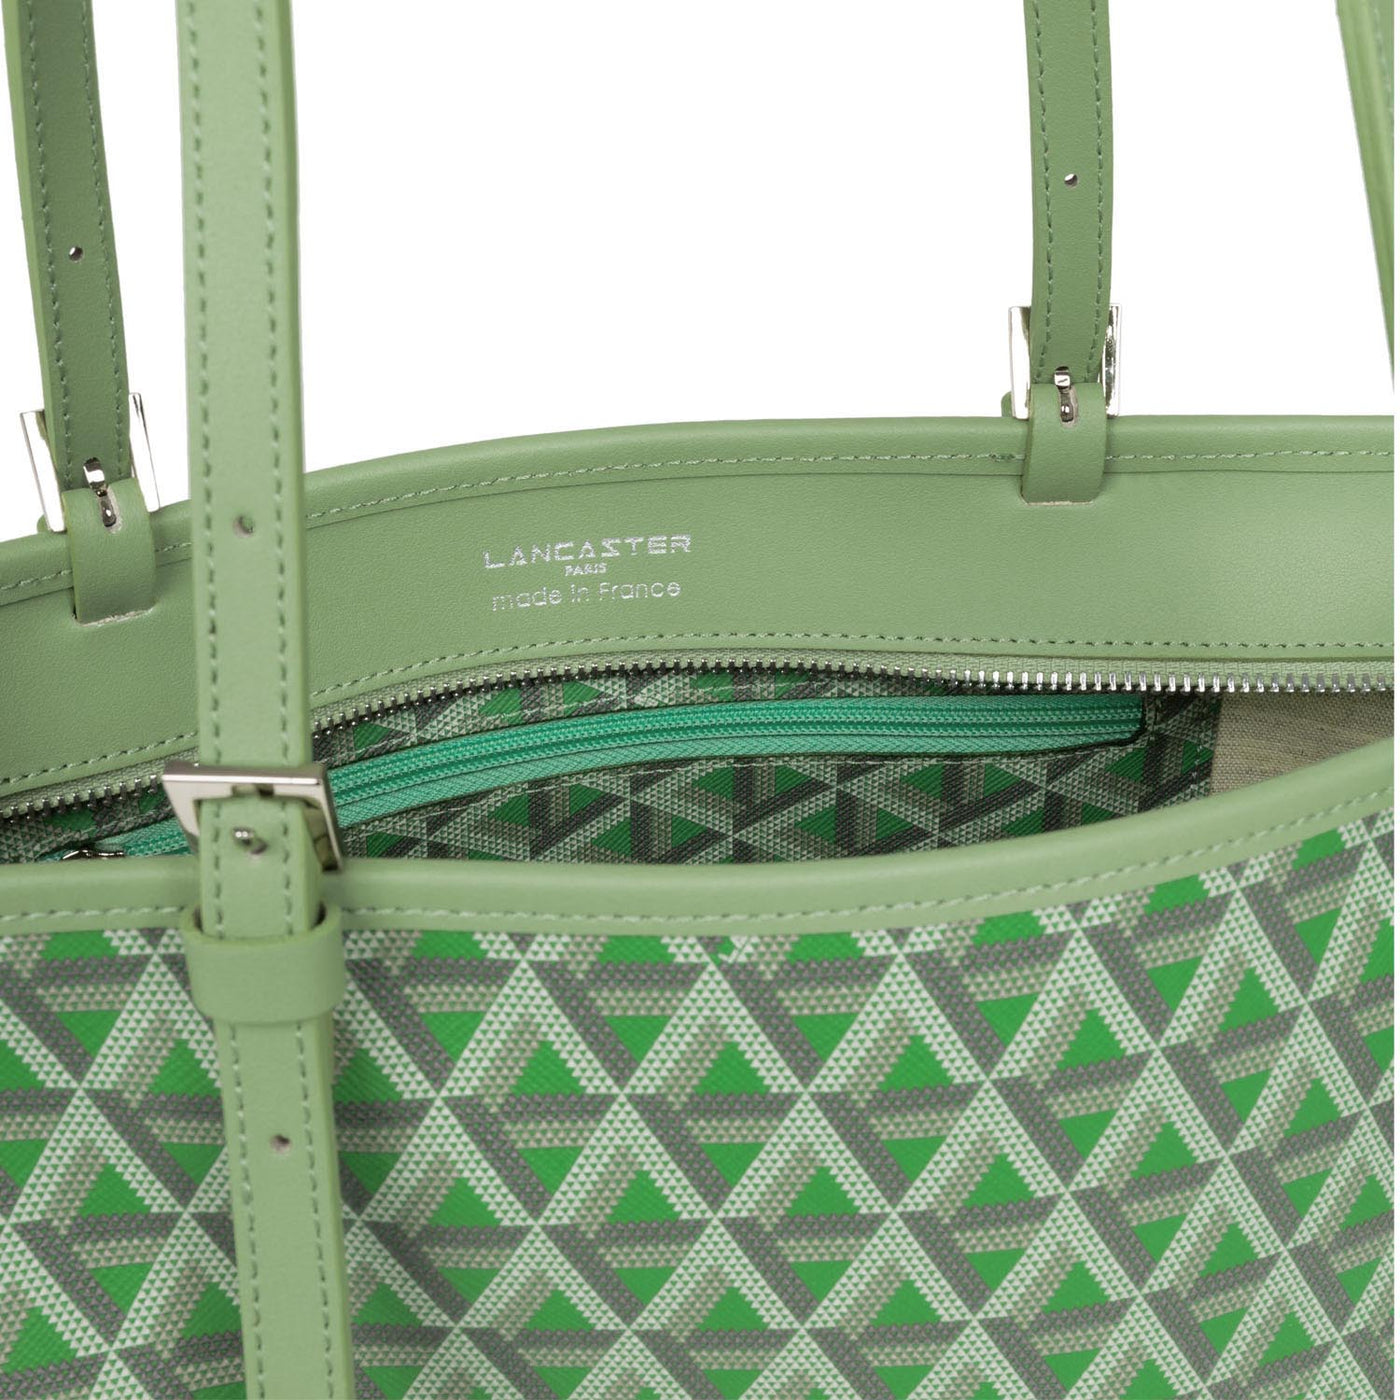 sac cabas épaule - ikon #couleur_vert